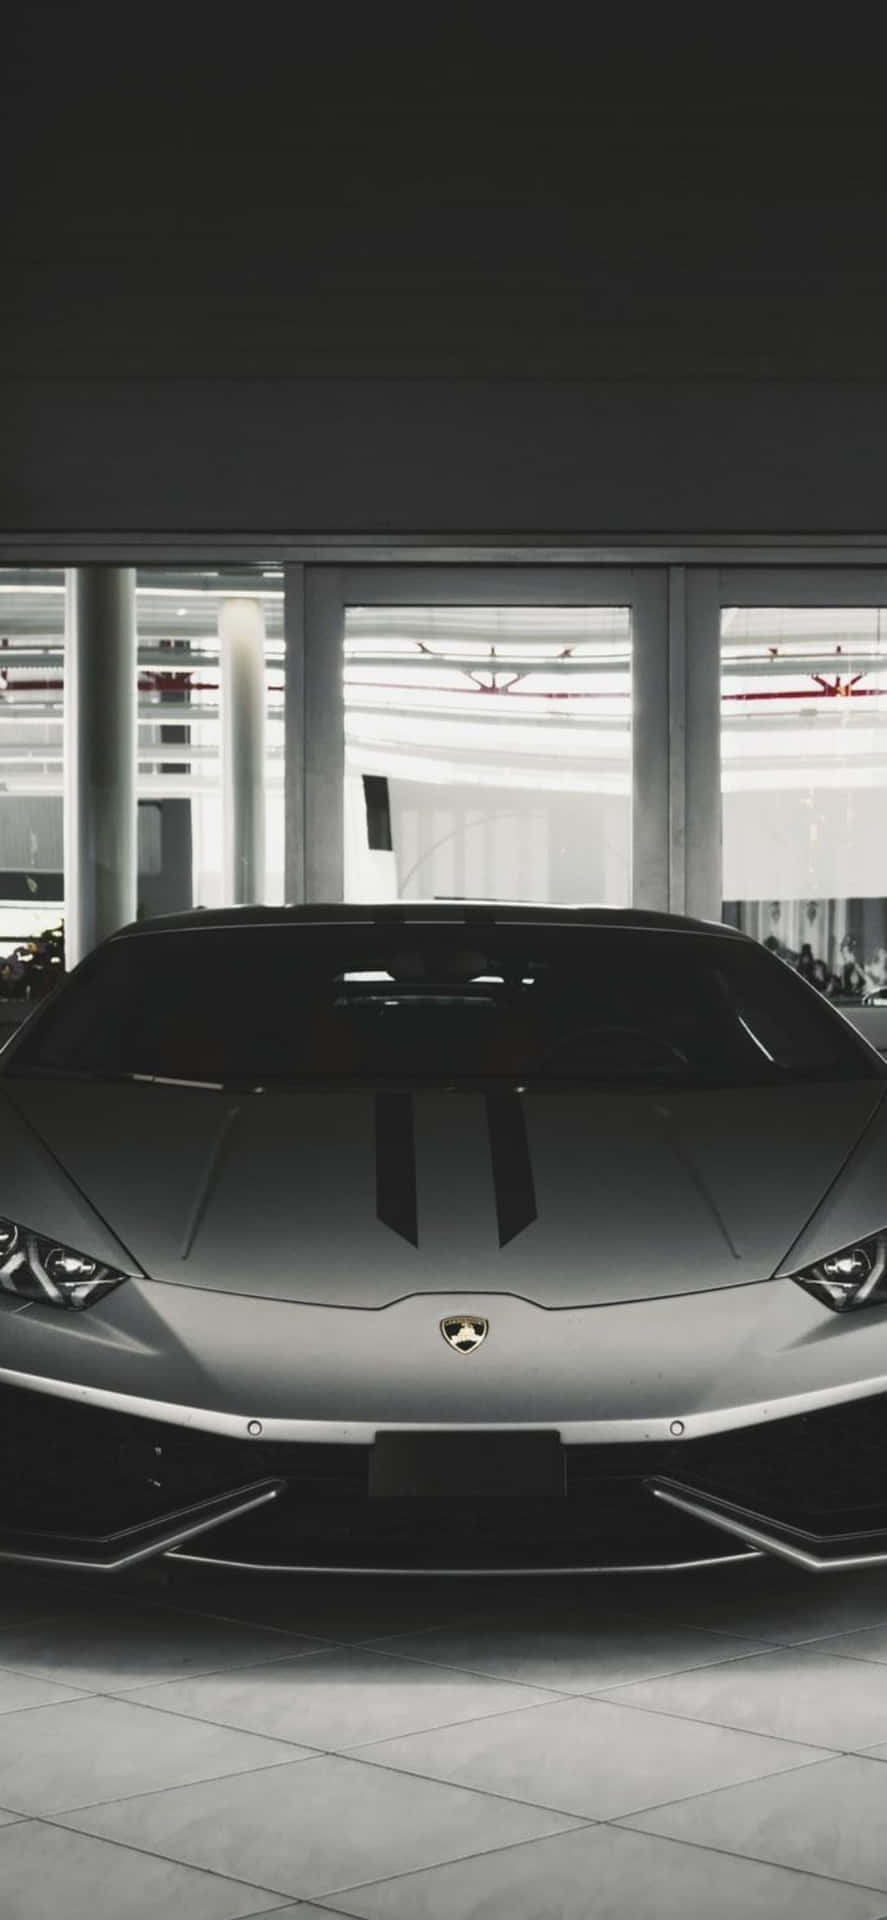 Enjoy the Luxury of Iphone X and Lamborghini